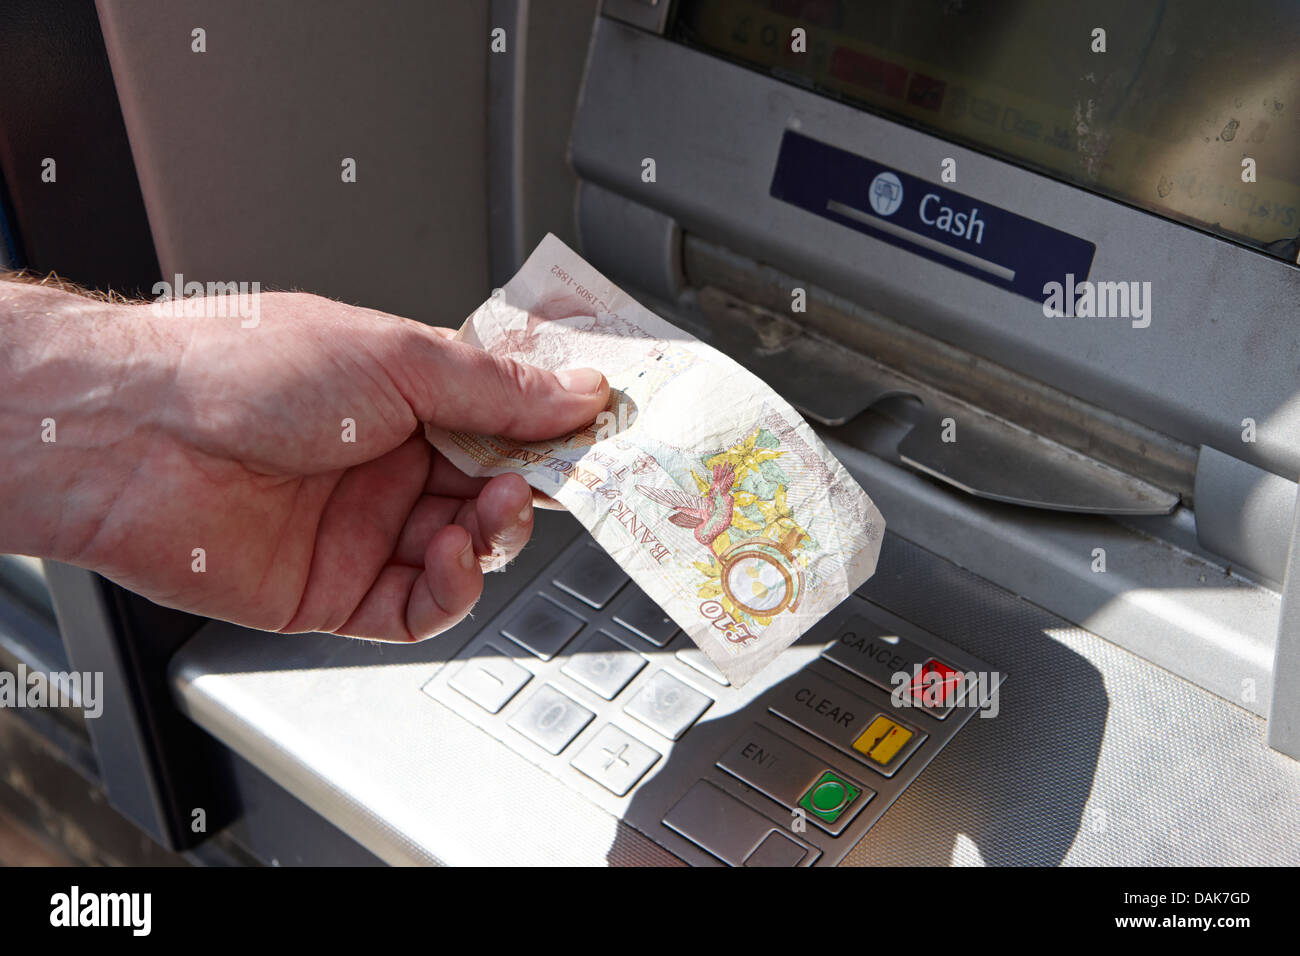 homme exploitant un distributeur automatique de billets retirant un billet unique de dix livres d'argent londres, angleterre royaume-uni Banque D'Images